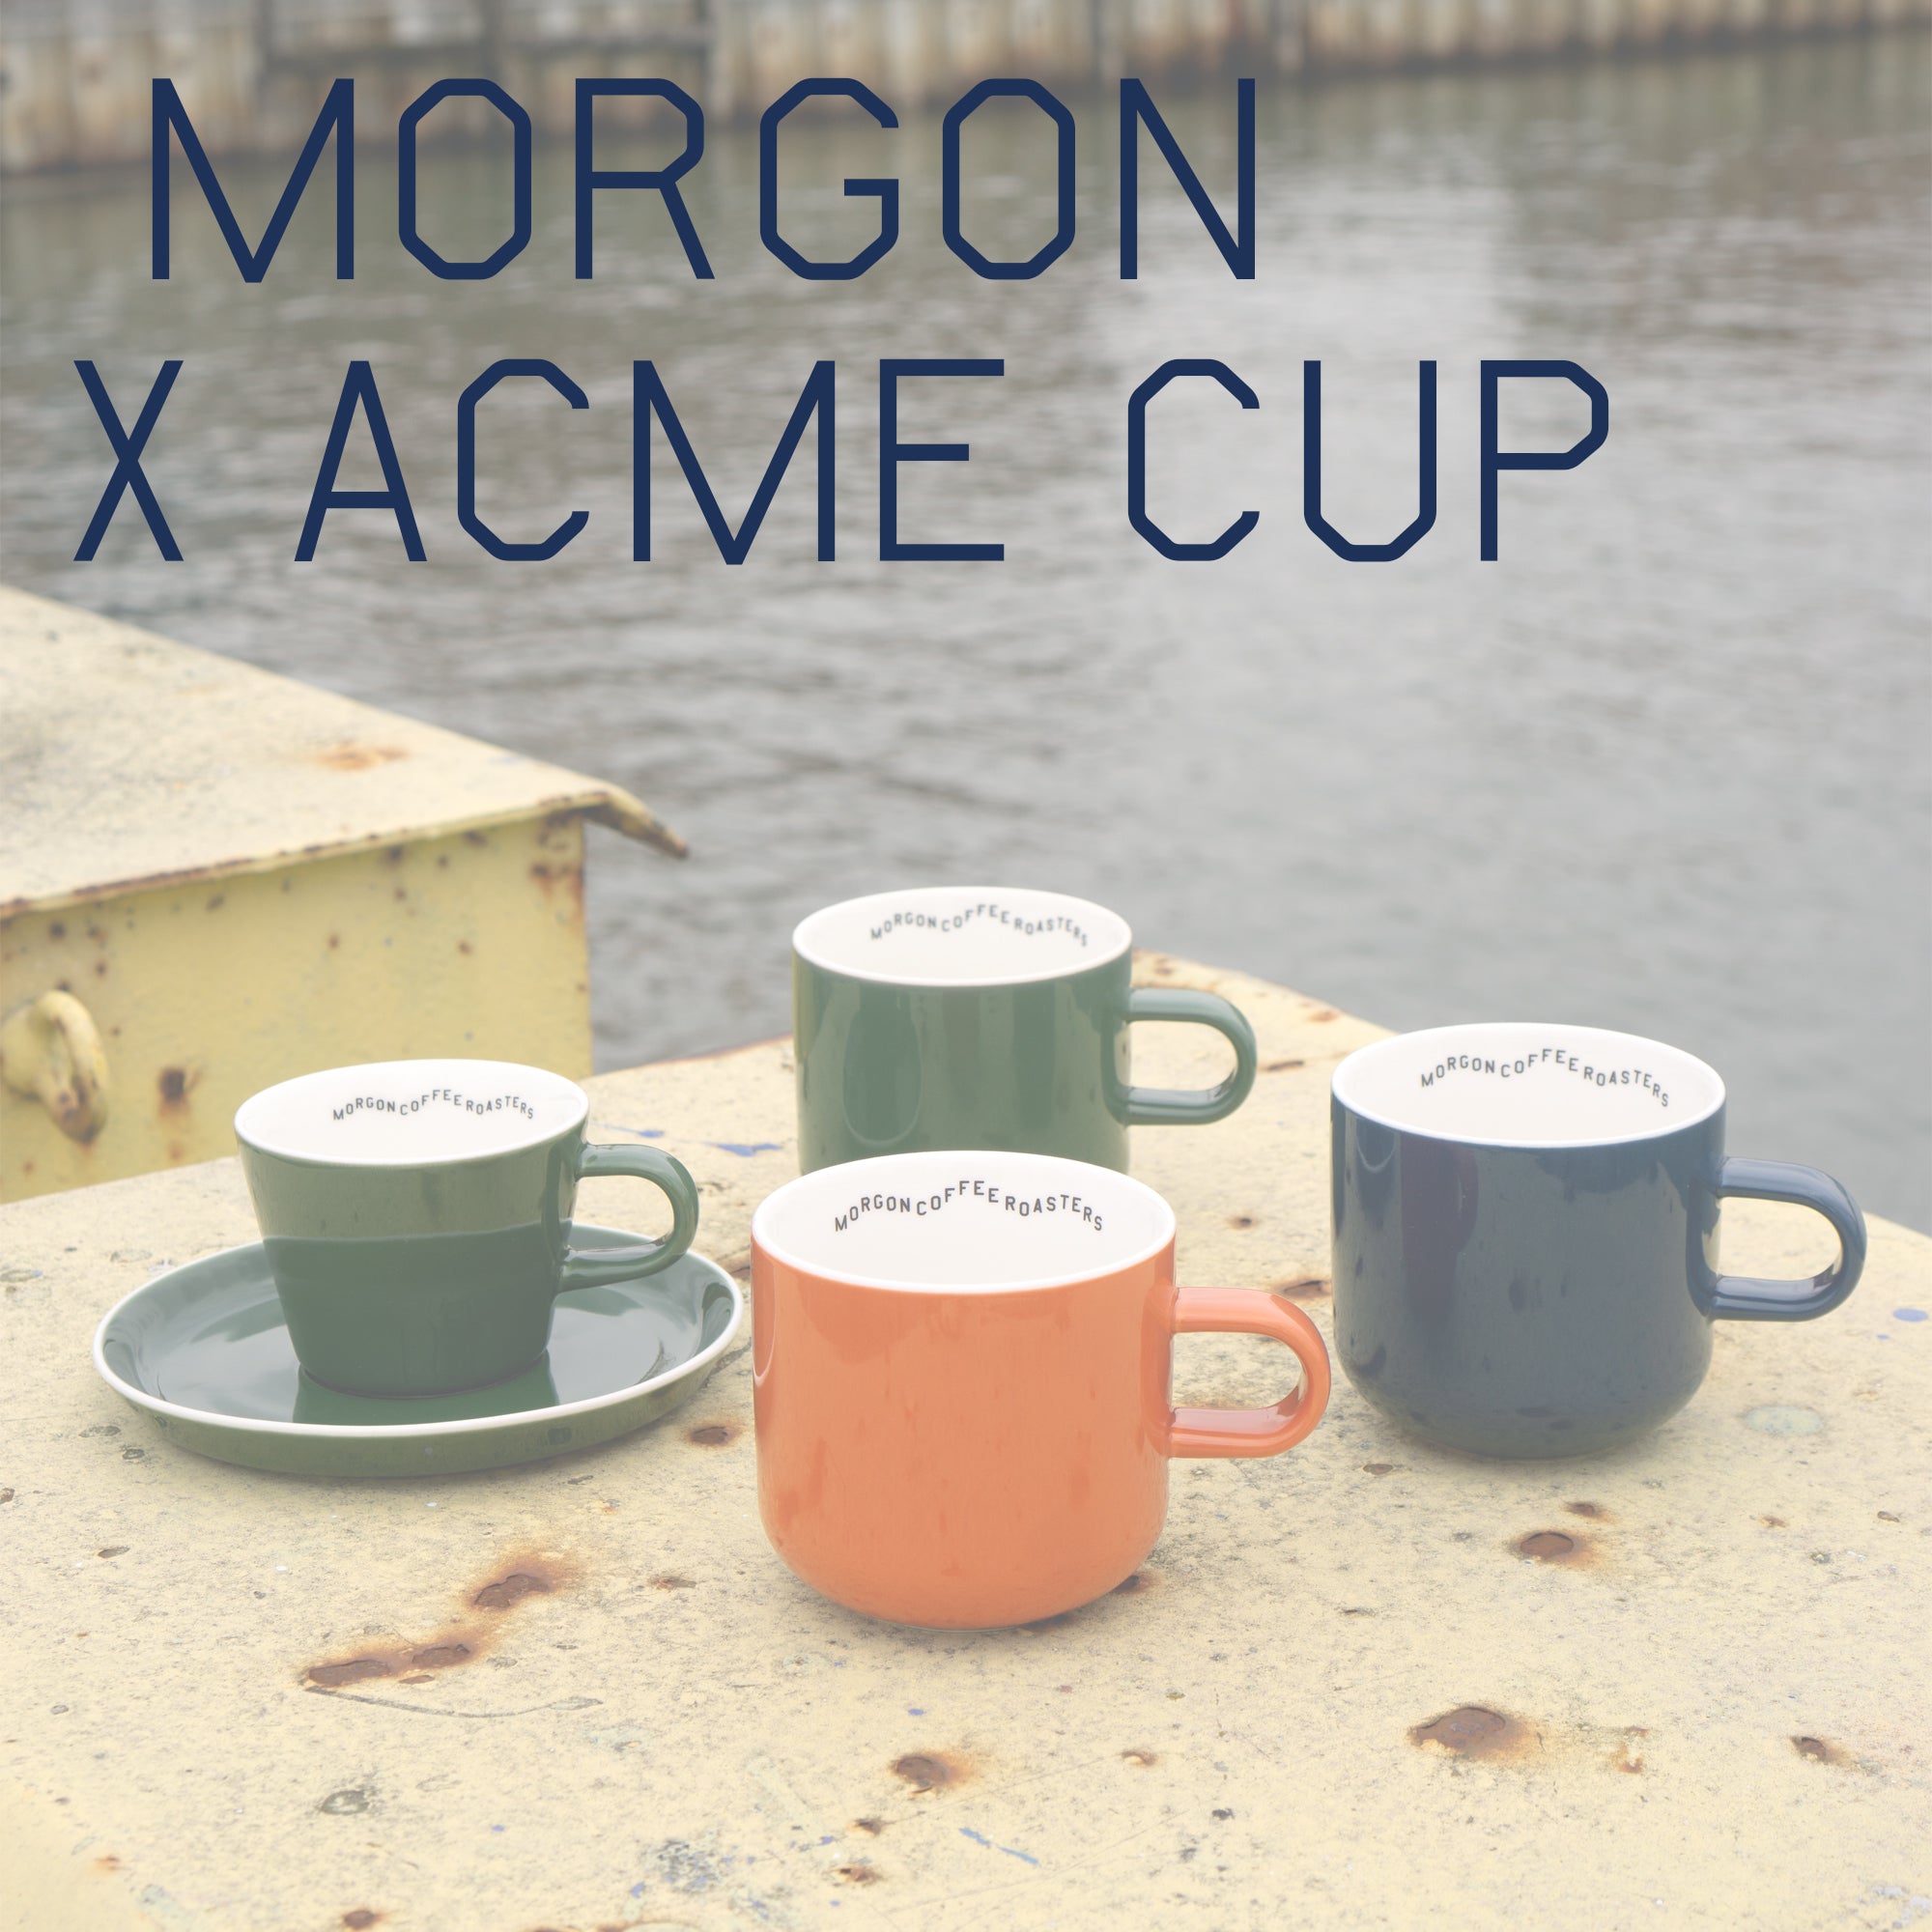 Morgon x ACME cup